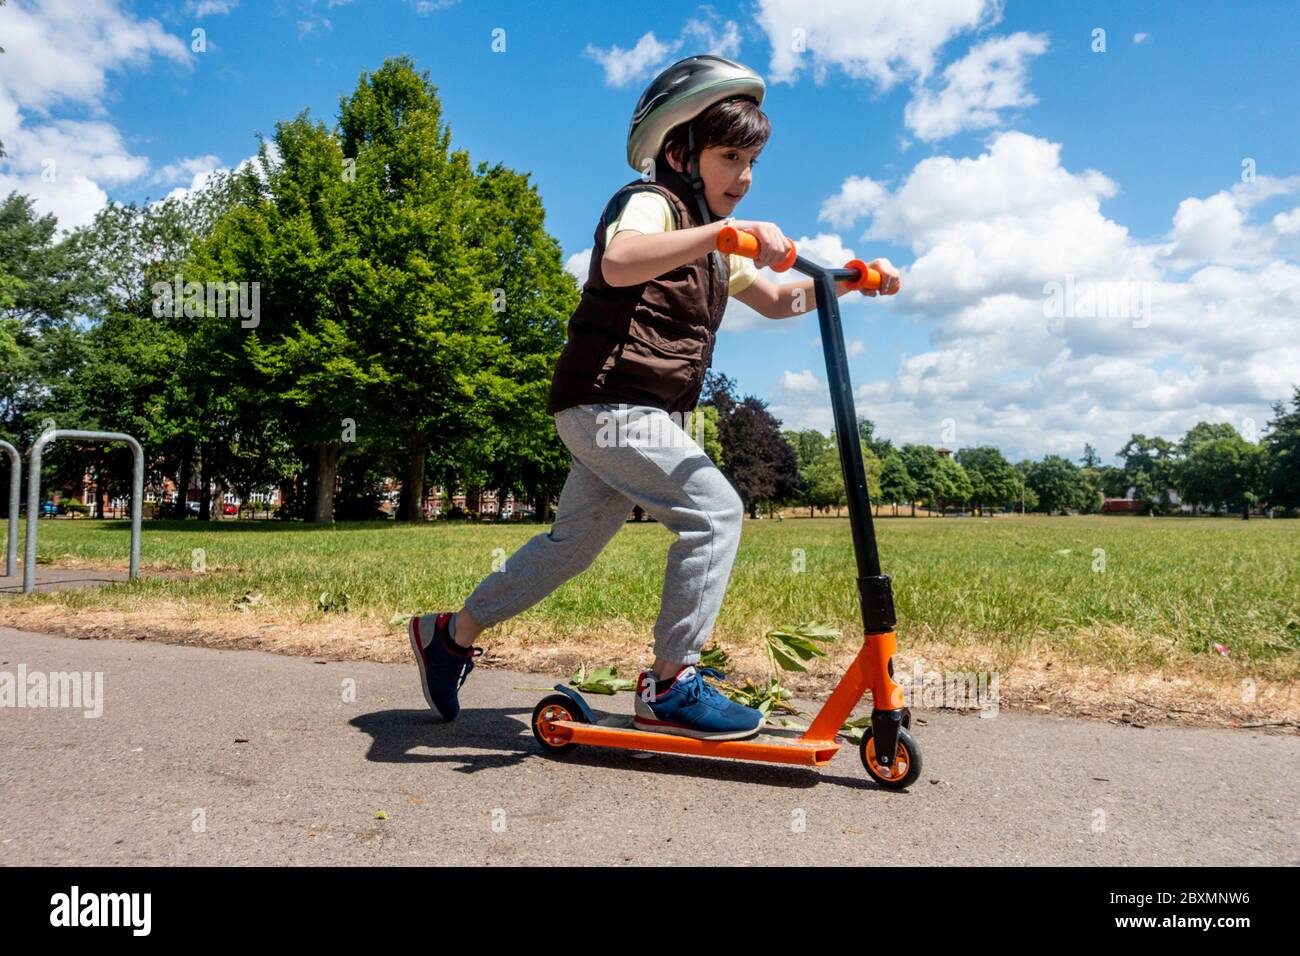 Un jeune garçon joue avec son scooter et le pousse lors d'une journée ensoleillée dans le parc. Ciel bleu et arbres verts. Enfant énergique et actif. Banque D'Images